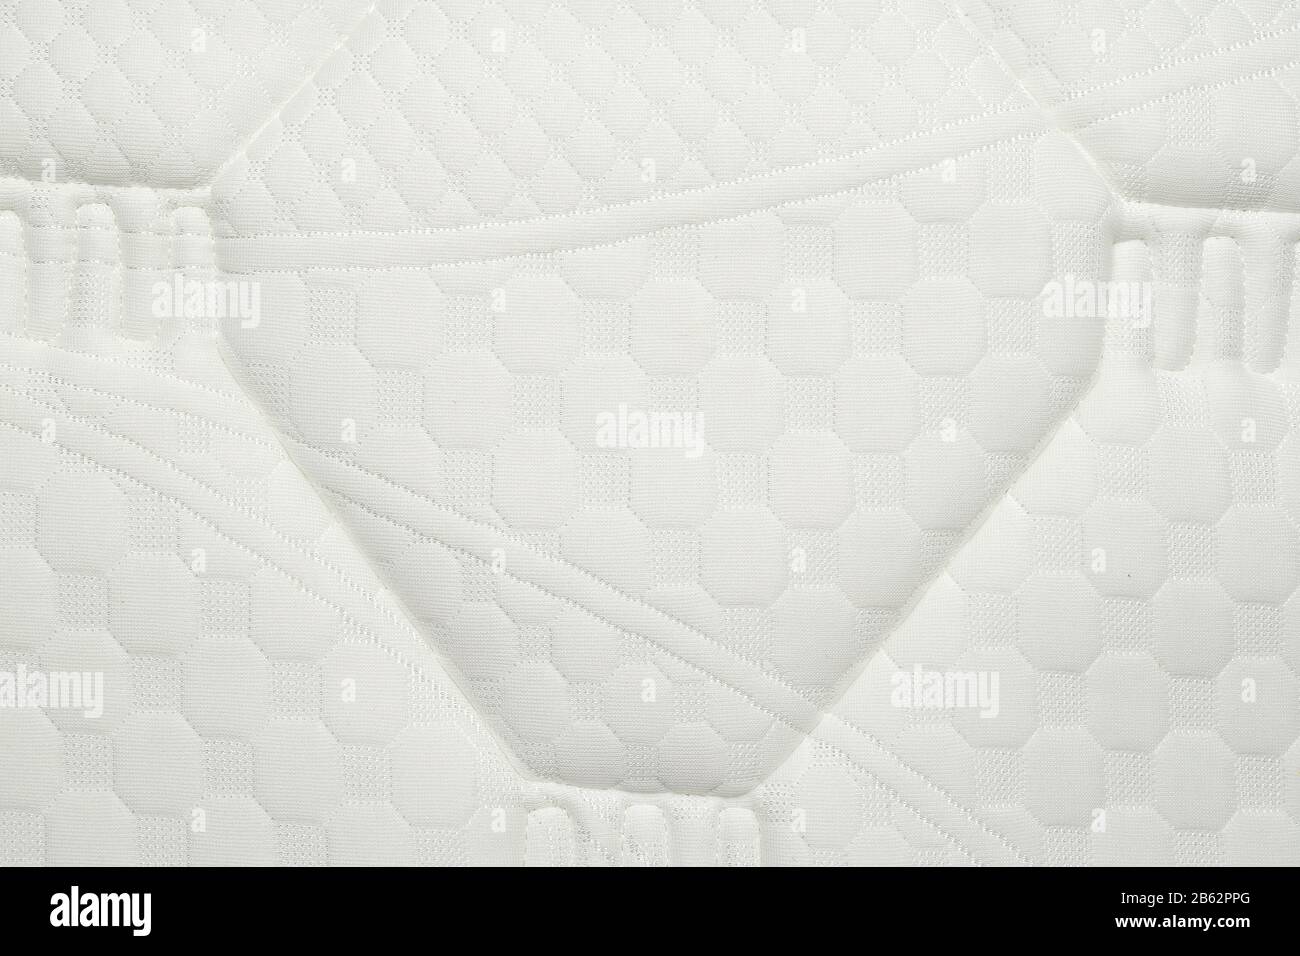 Matratze. Weißes Gewebe ohne Schmutz, Schimmel oder Flecken reinigen. Stockfoto